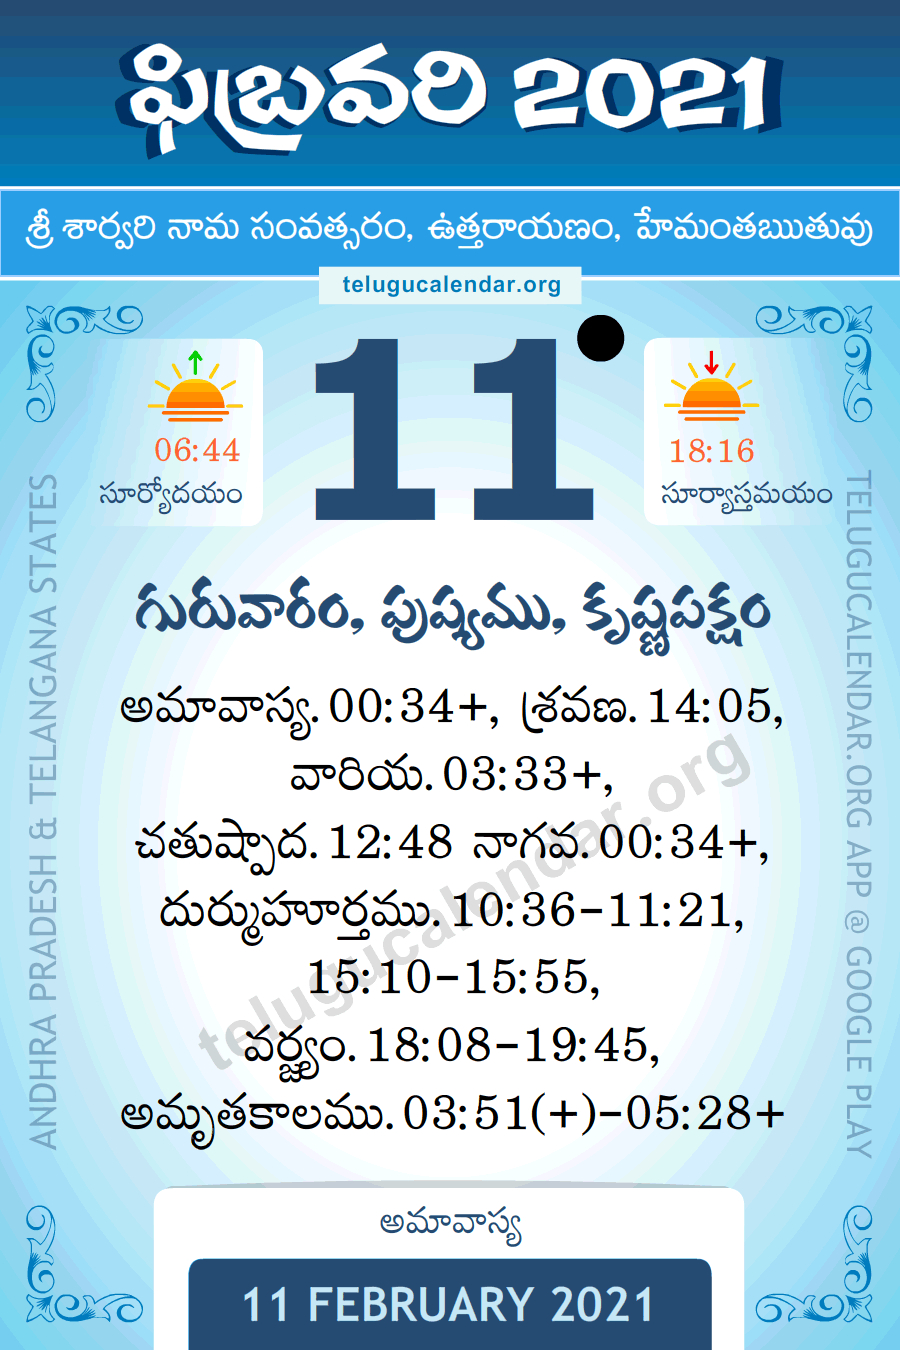 Take January 2022 Calendar In Kannada